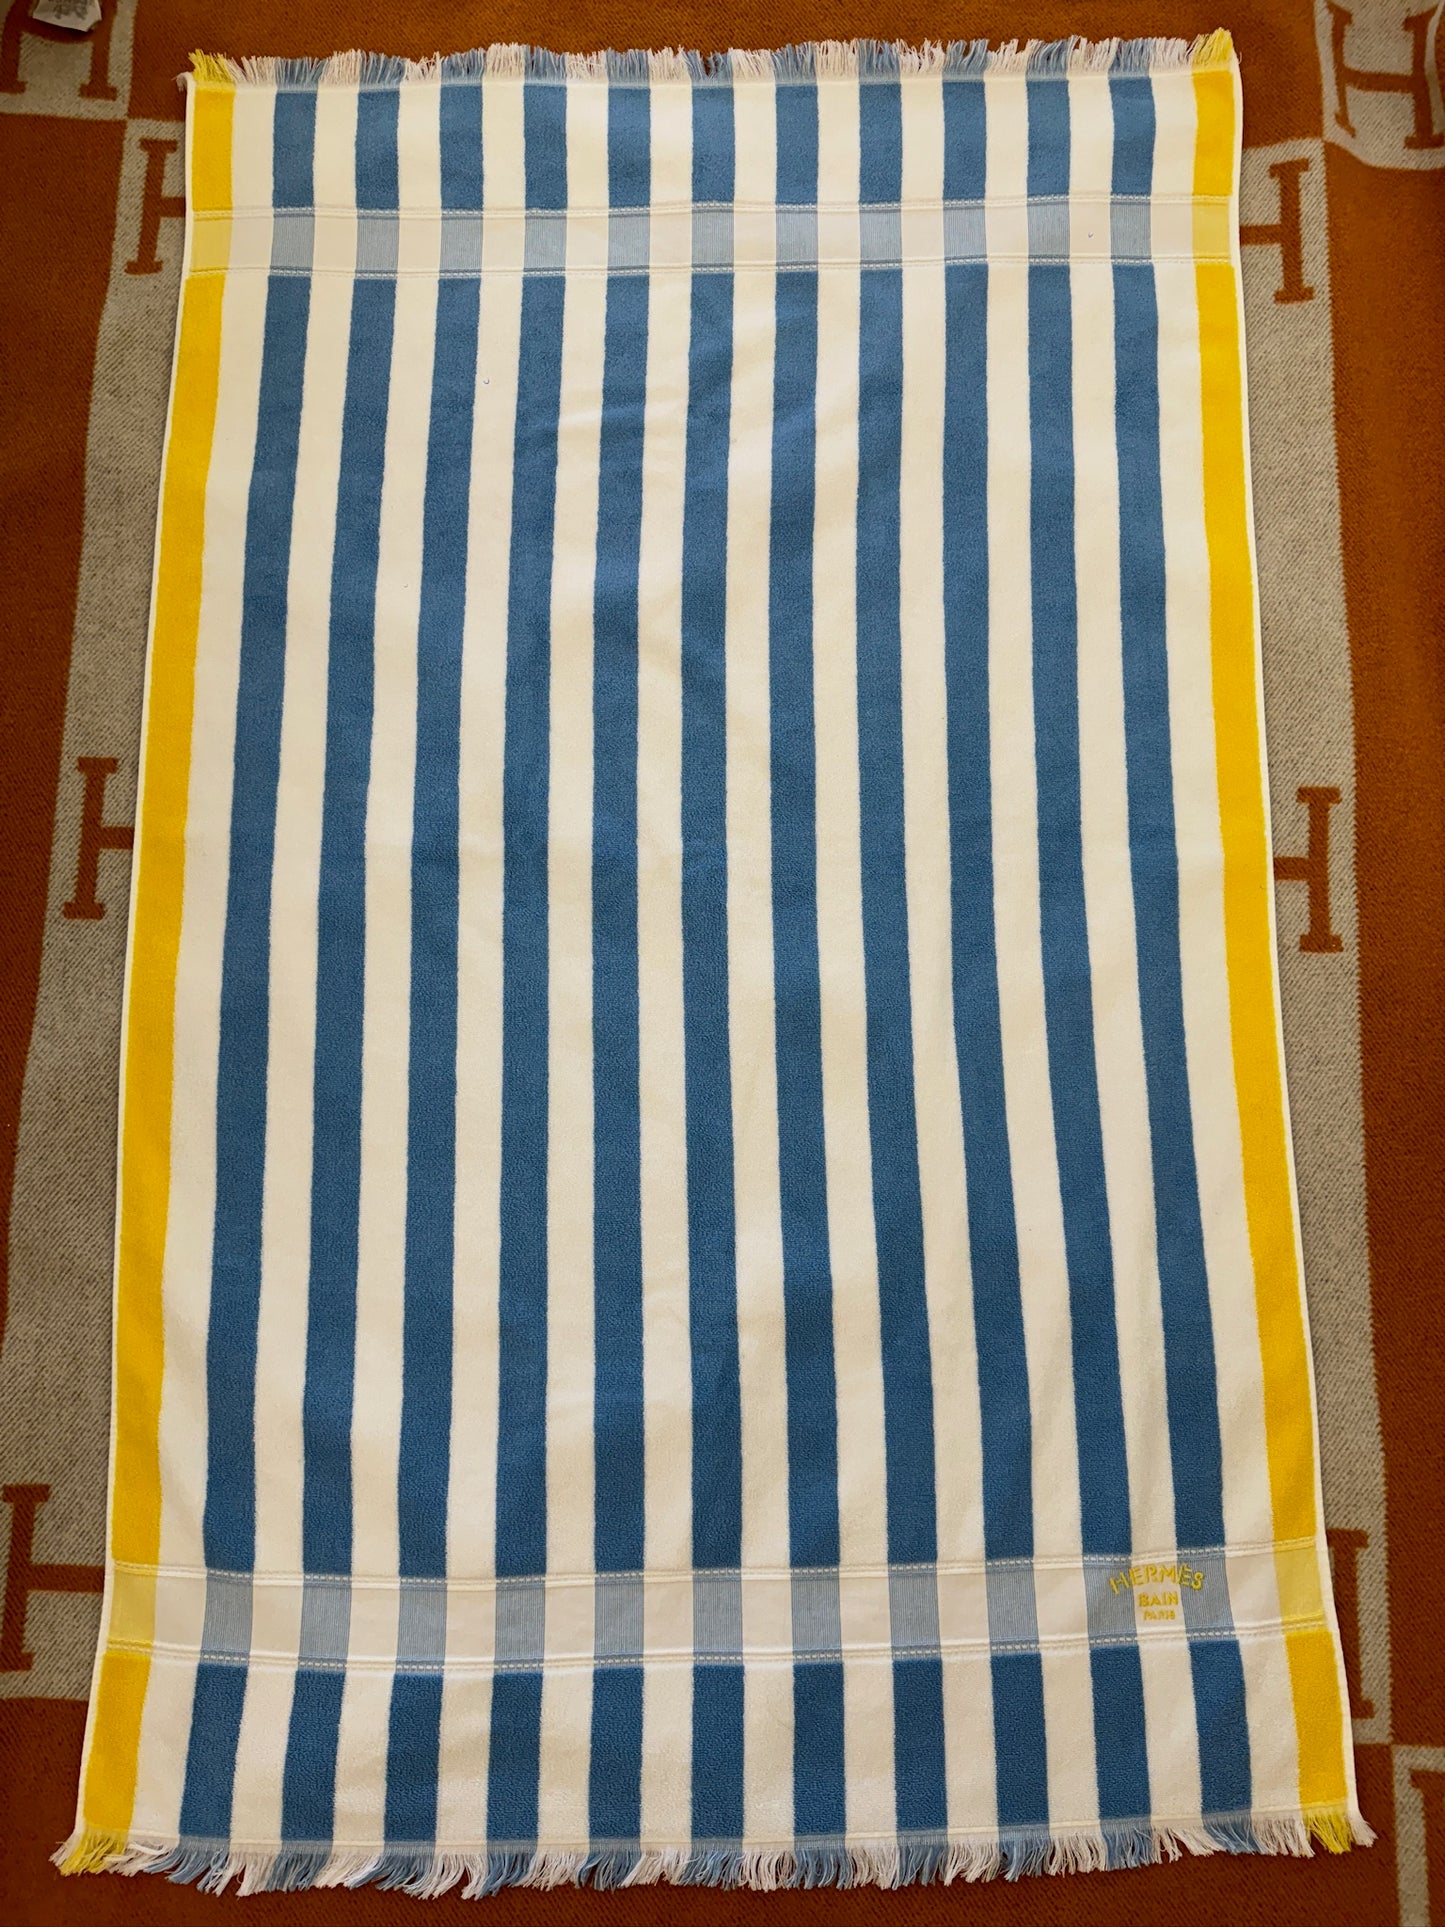 Hermes Yachting Raye beach towel